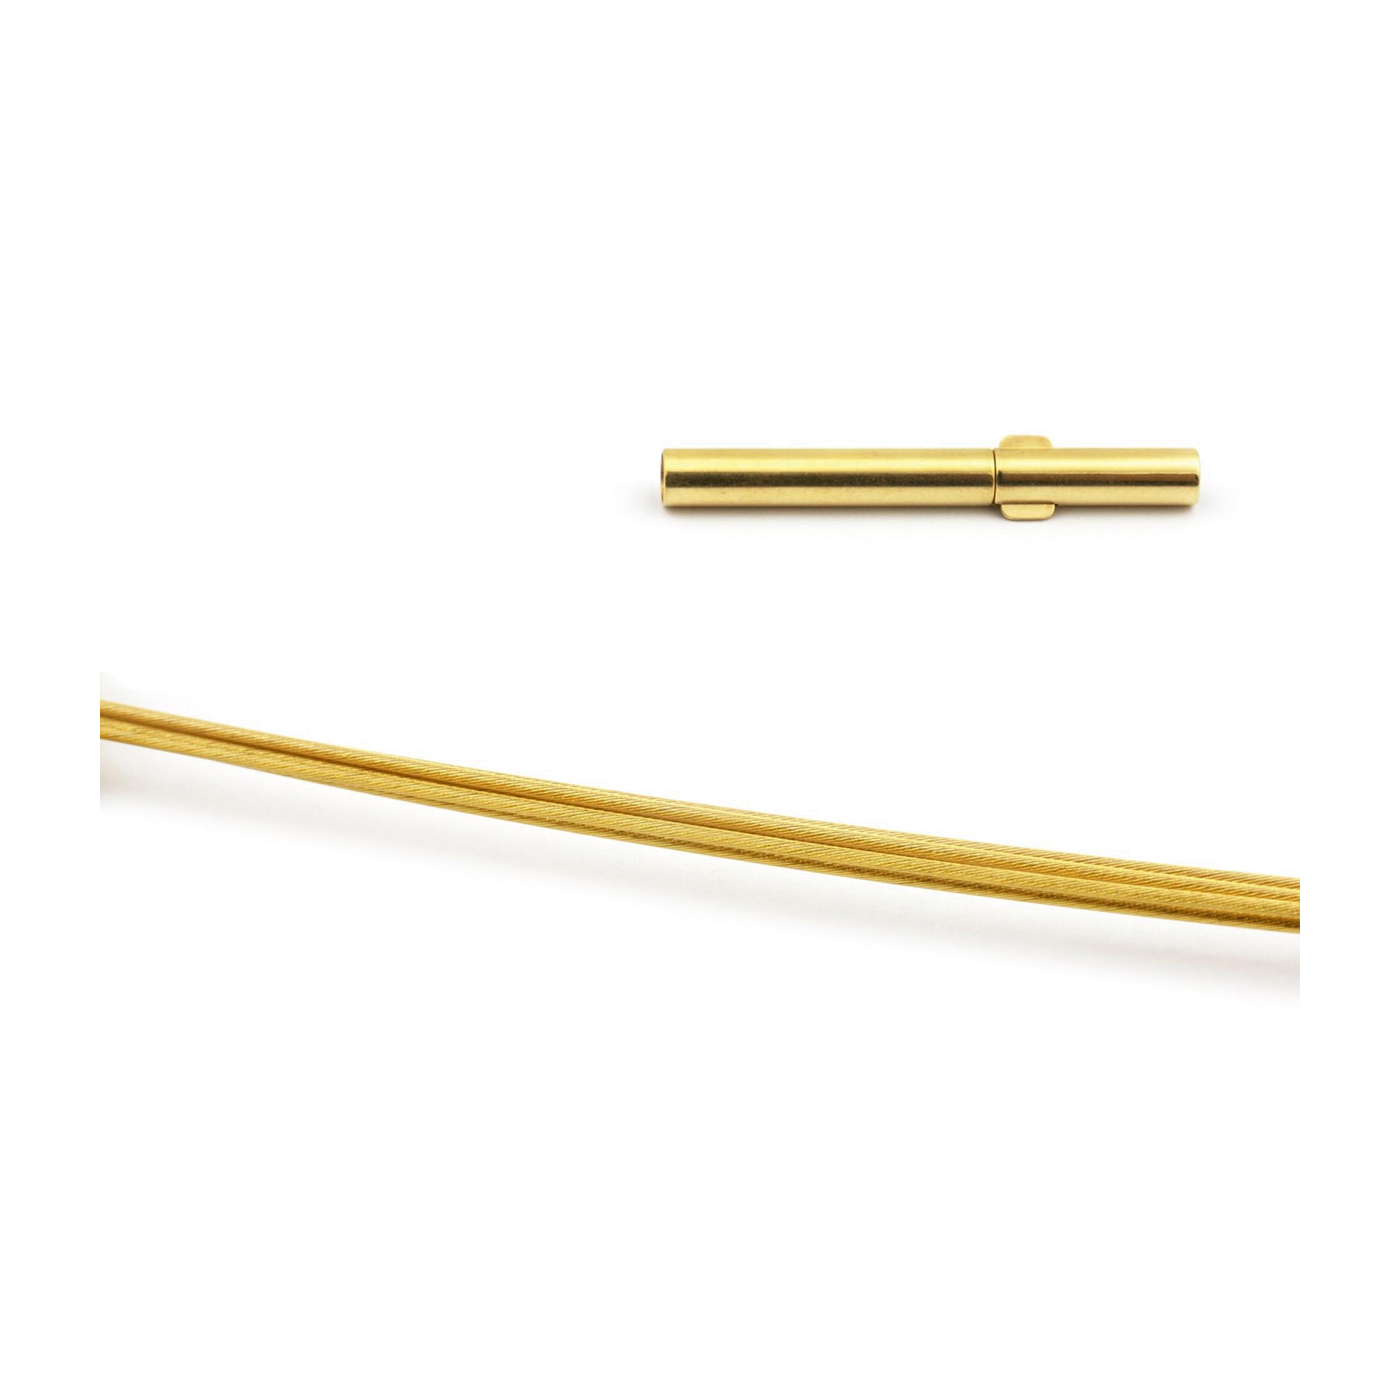 Seilcollier "Plus Cable", ES vergoldet, 5-reihig, ø 45 cm - 1 Stück